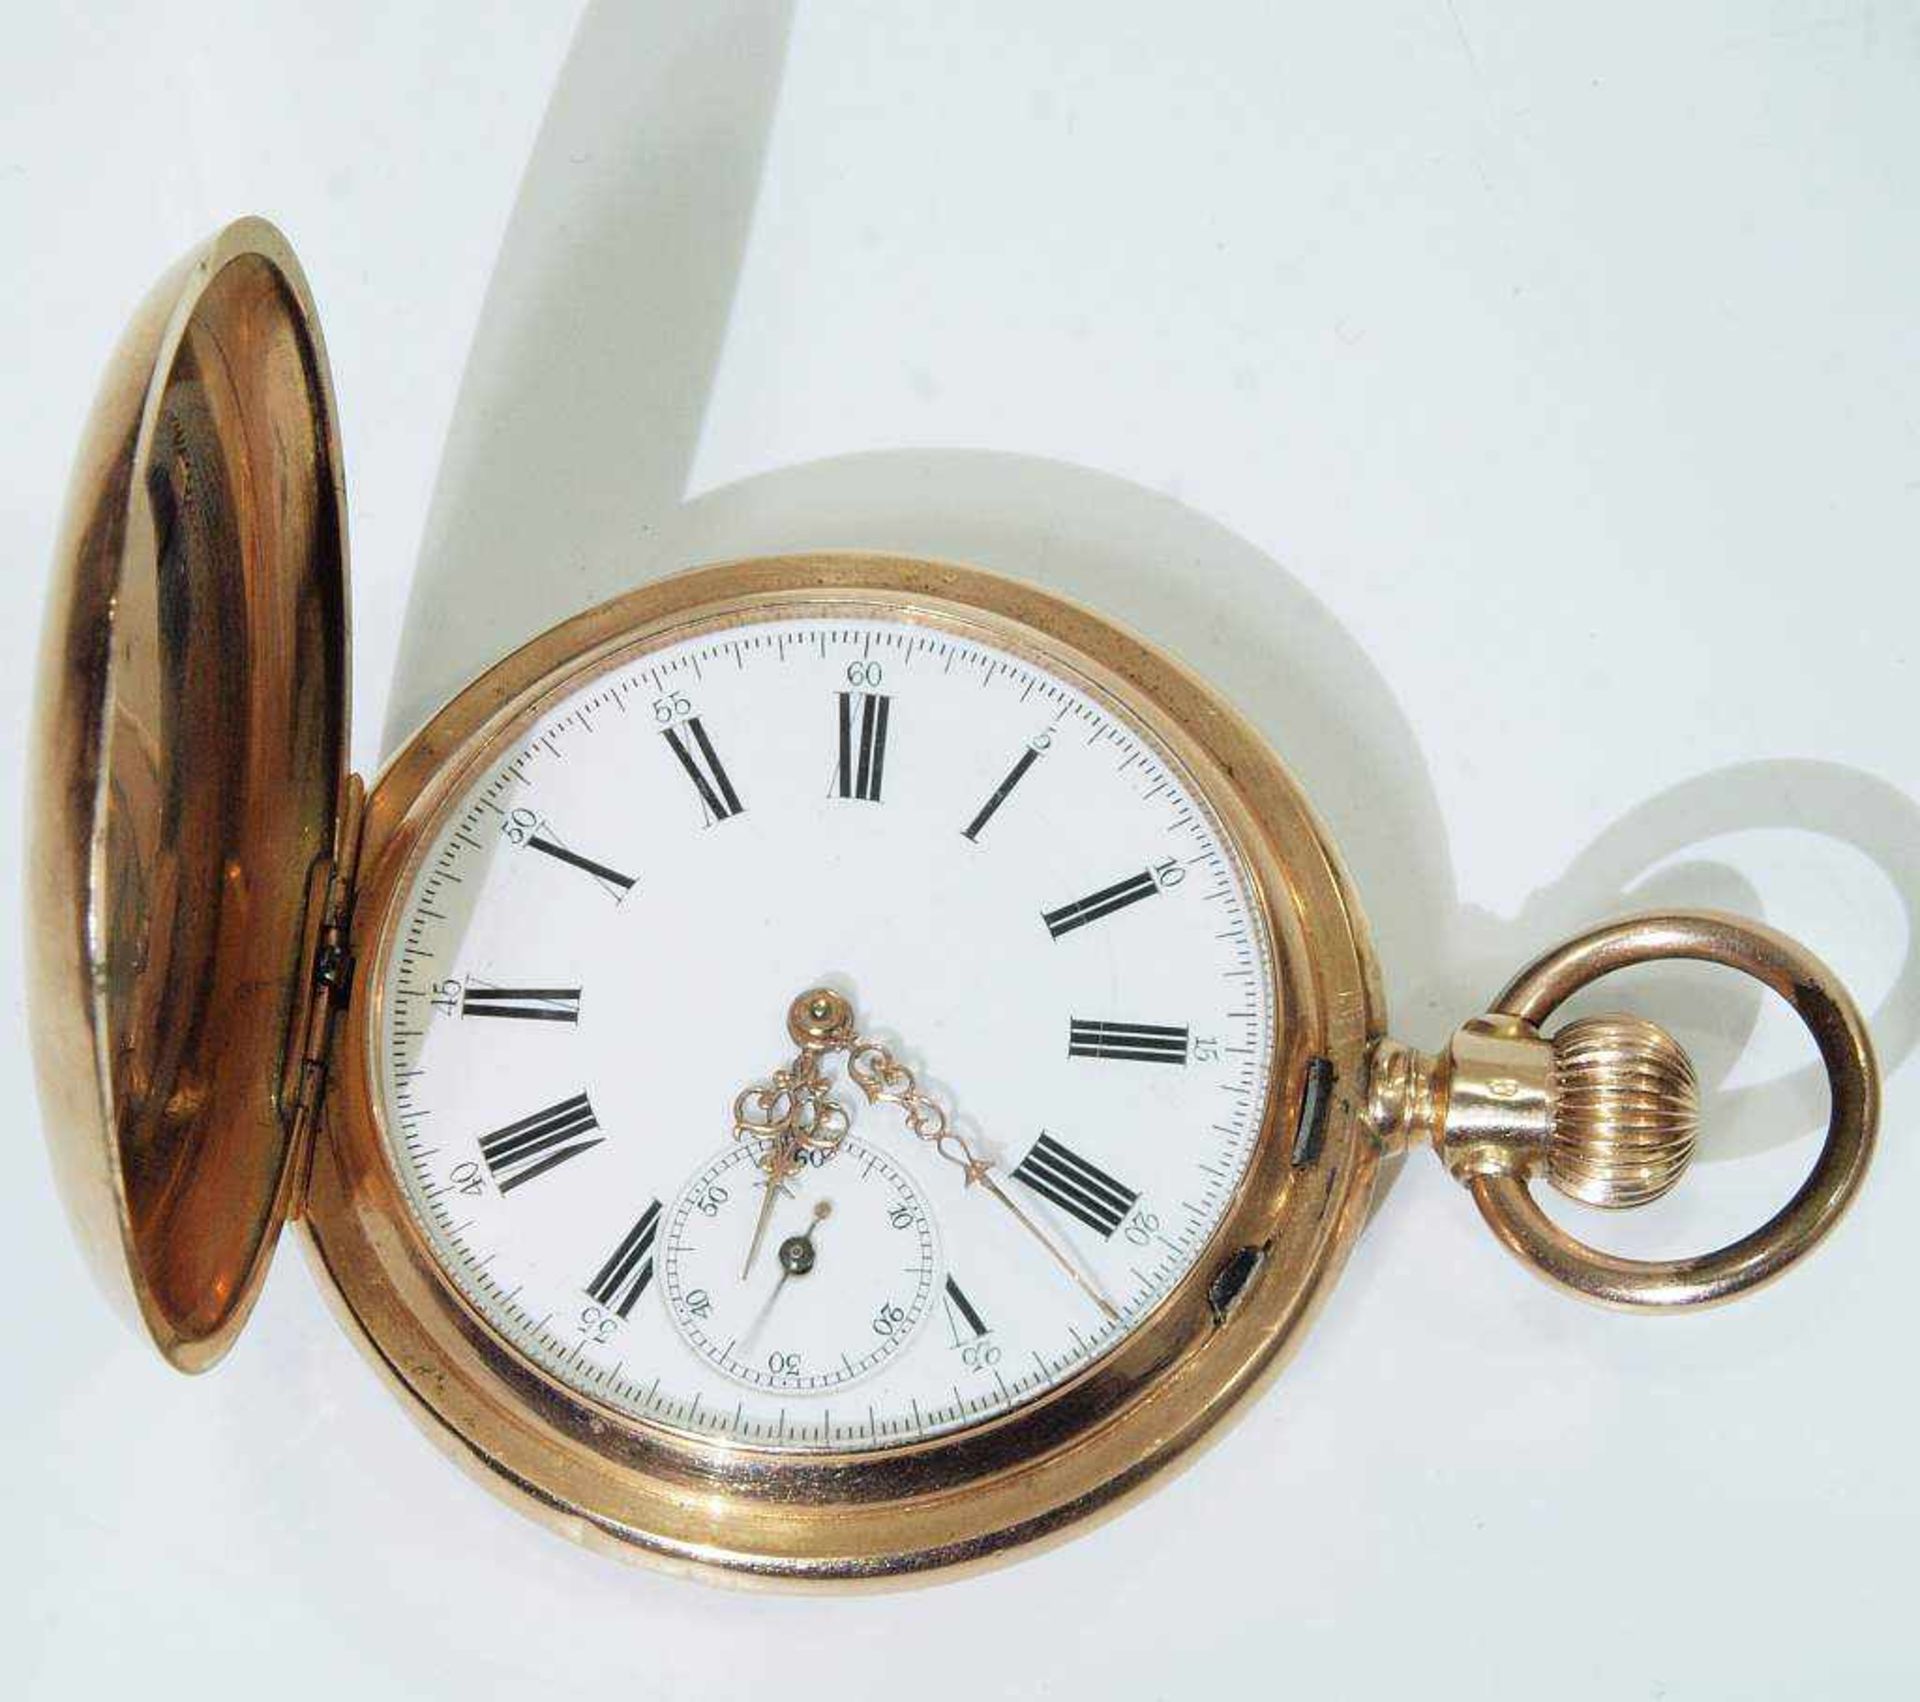 Taschenuhr an Uhrenkette. Taschenuhr an Uhrenkette. Taschenuhr mit Staubdeckel, punciert 14 kt., - Bild 5 aus 8